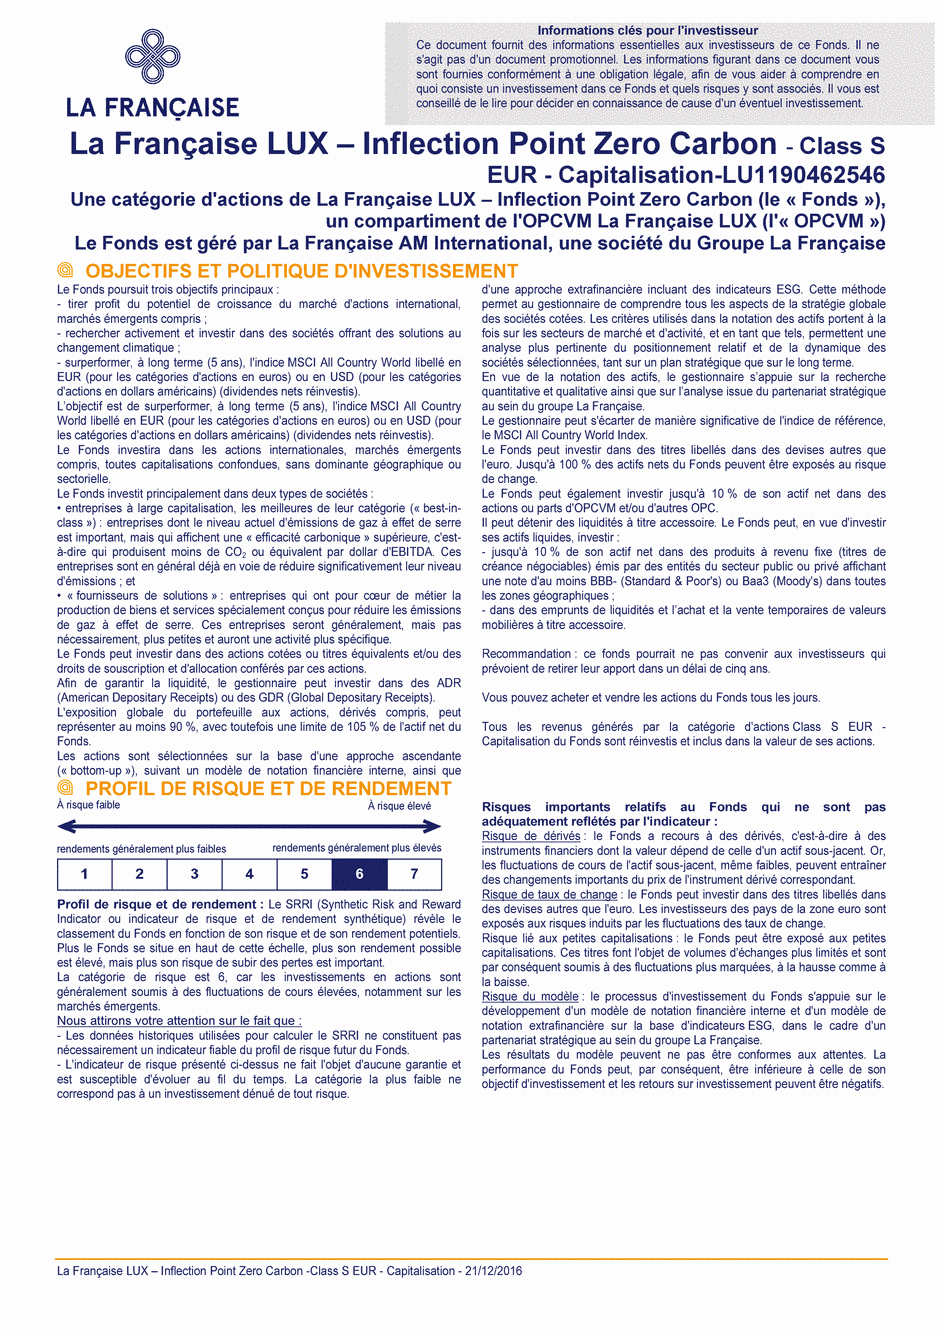 DICI La Française LUX - Inflection Point Carbon Impact Global - Class S EUR - 21/12/2016 - Français